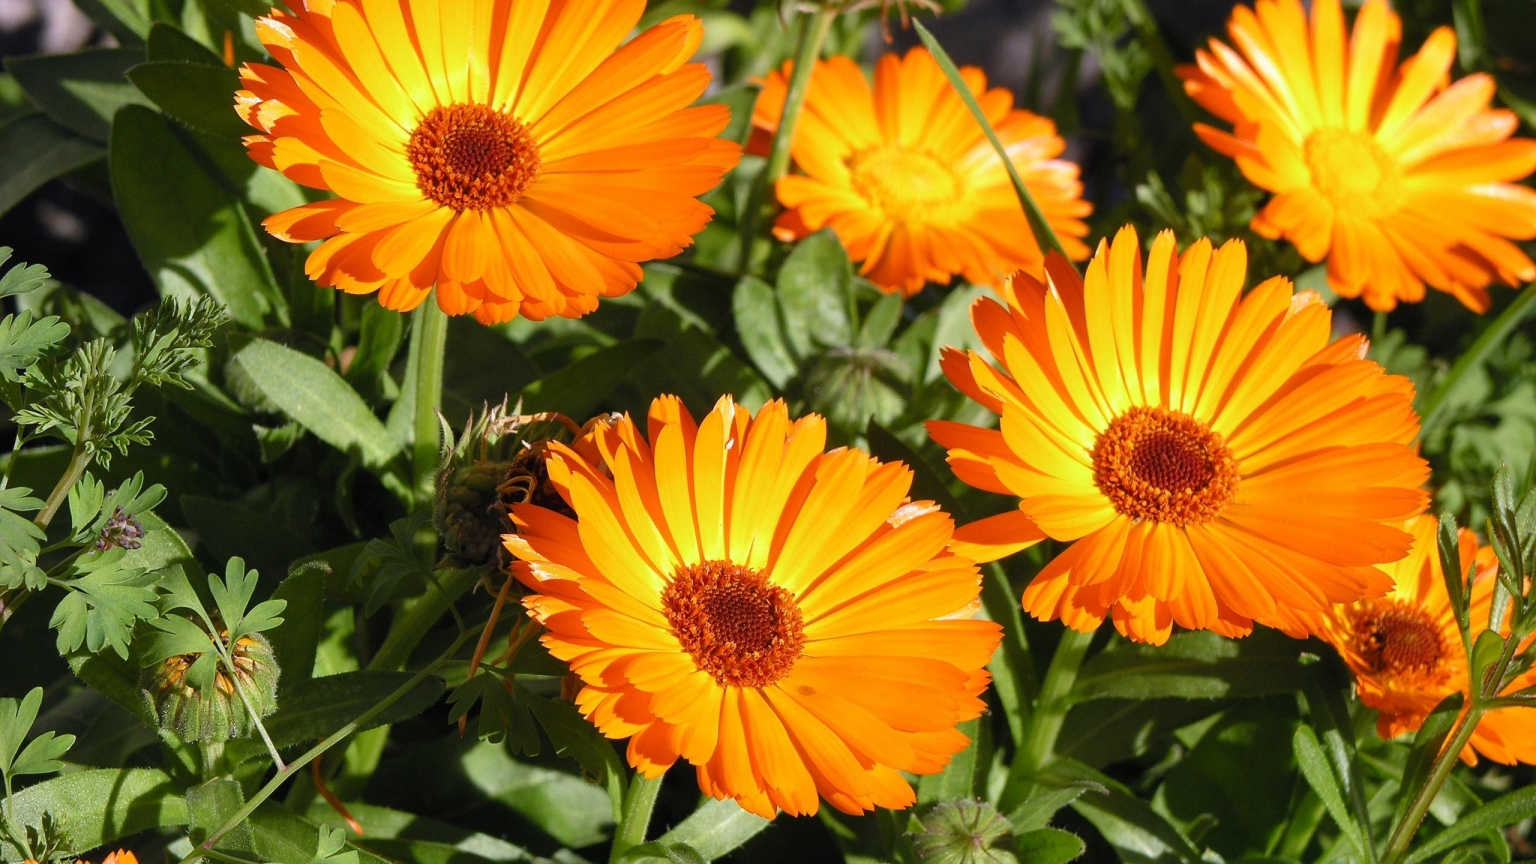 Sunbathing Flower for 1536 x 864 HDTV resolution